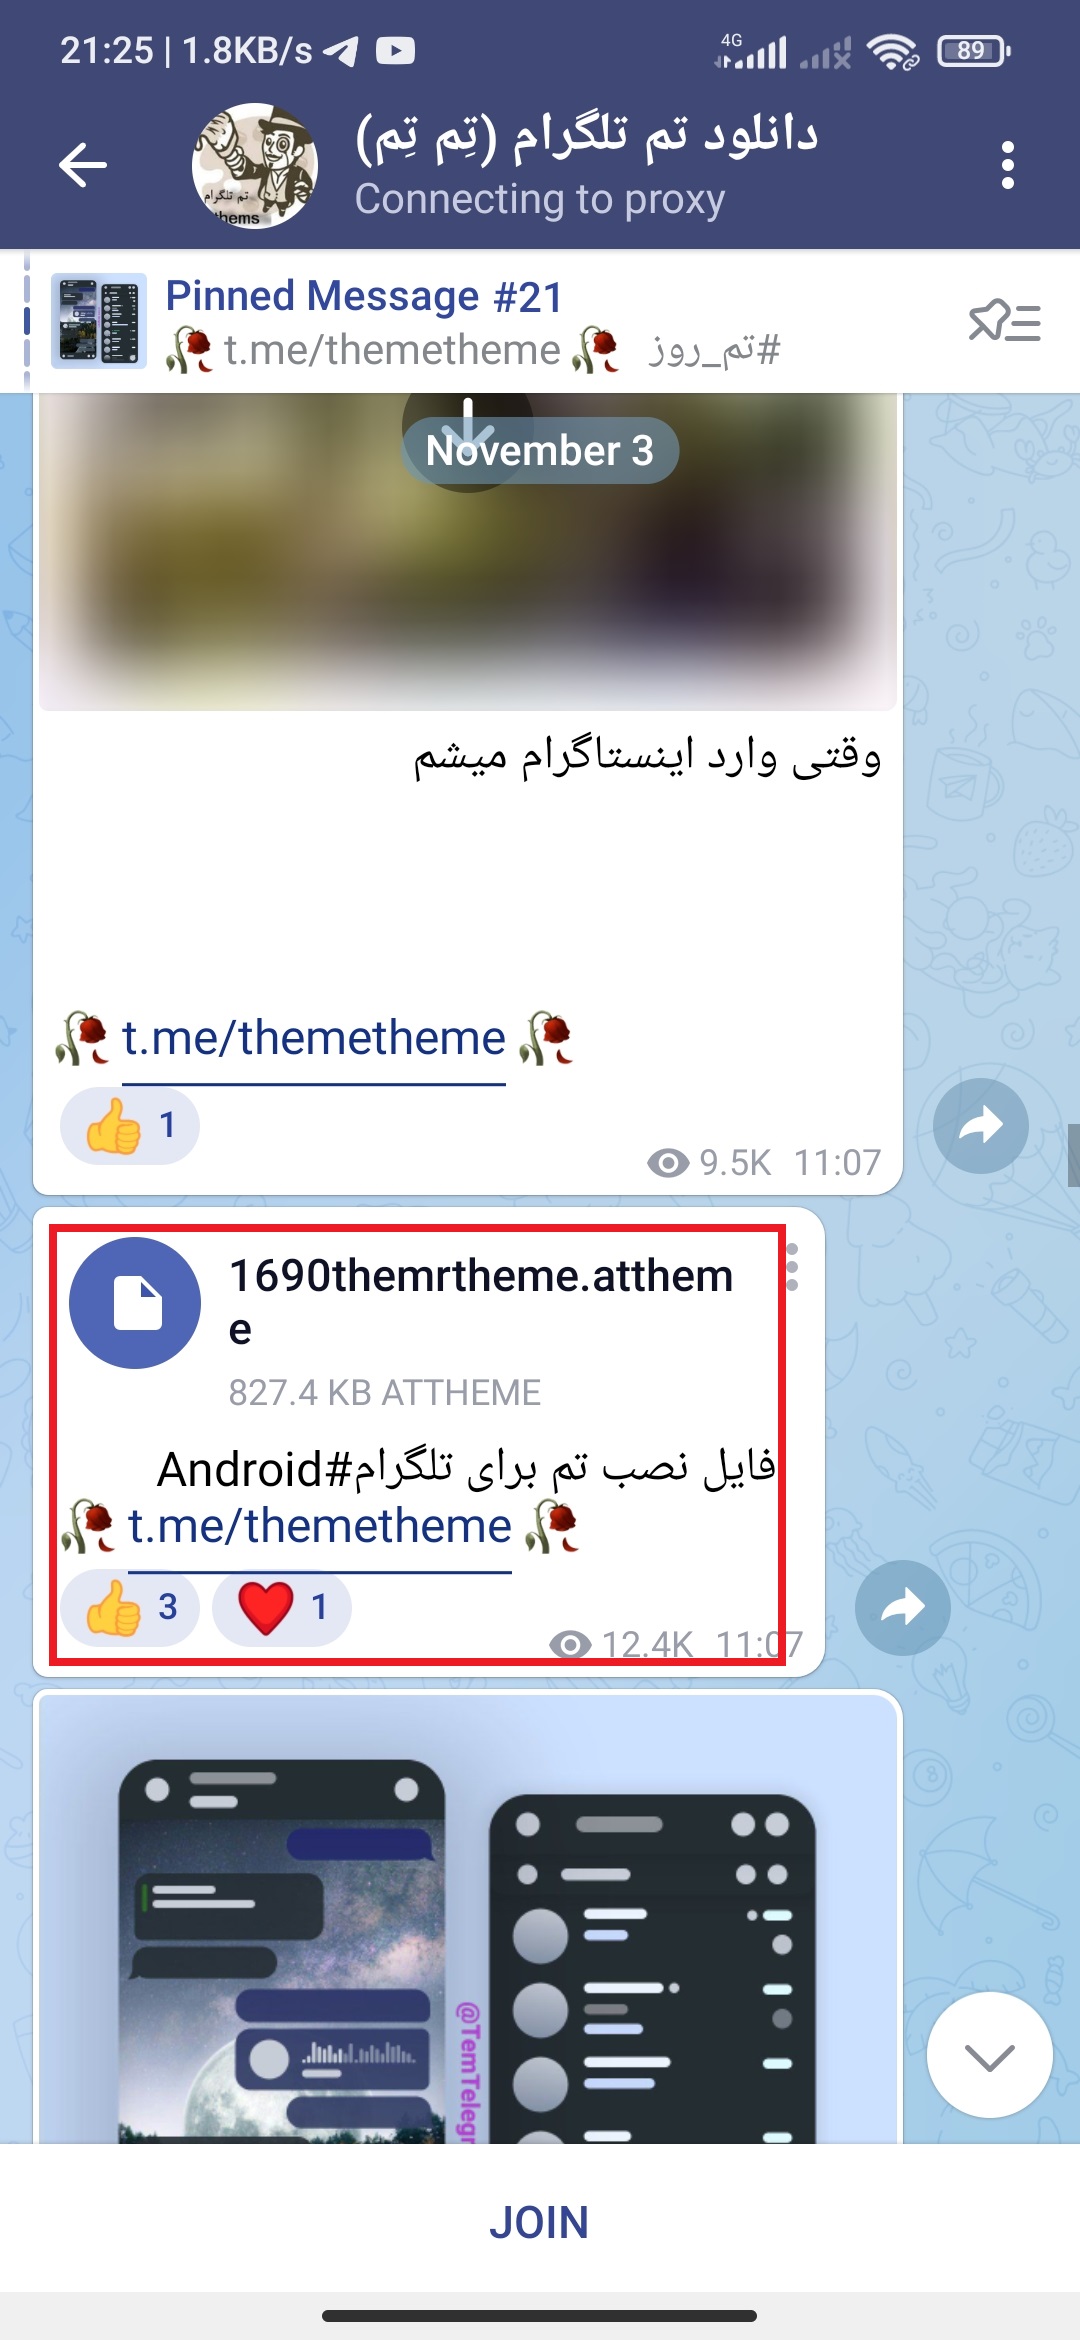 دانلود تم برای تلگرام